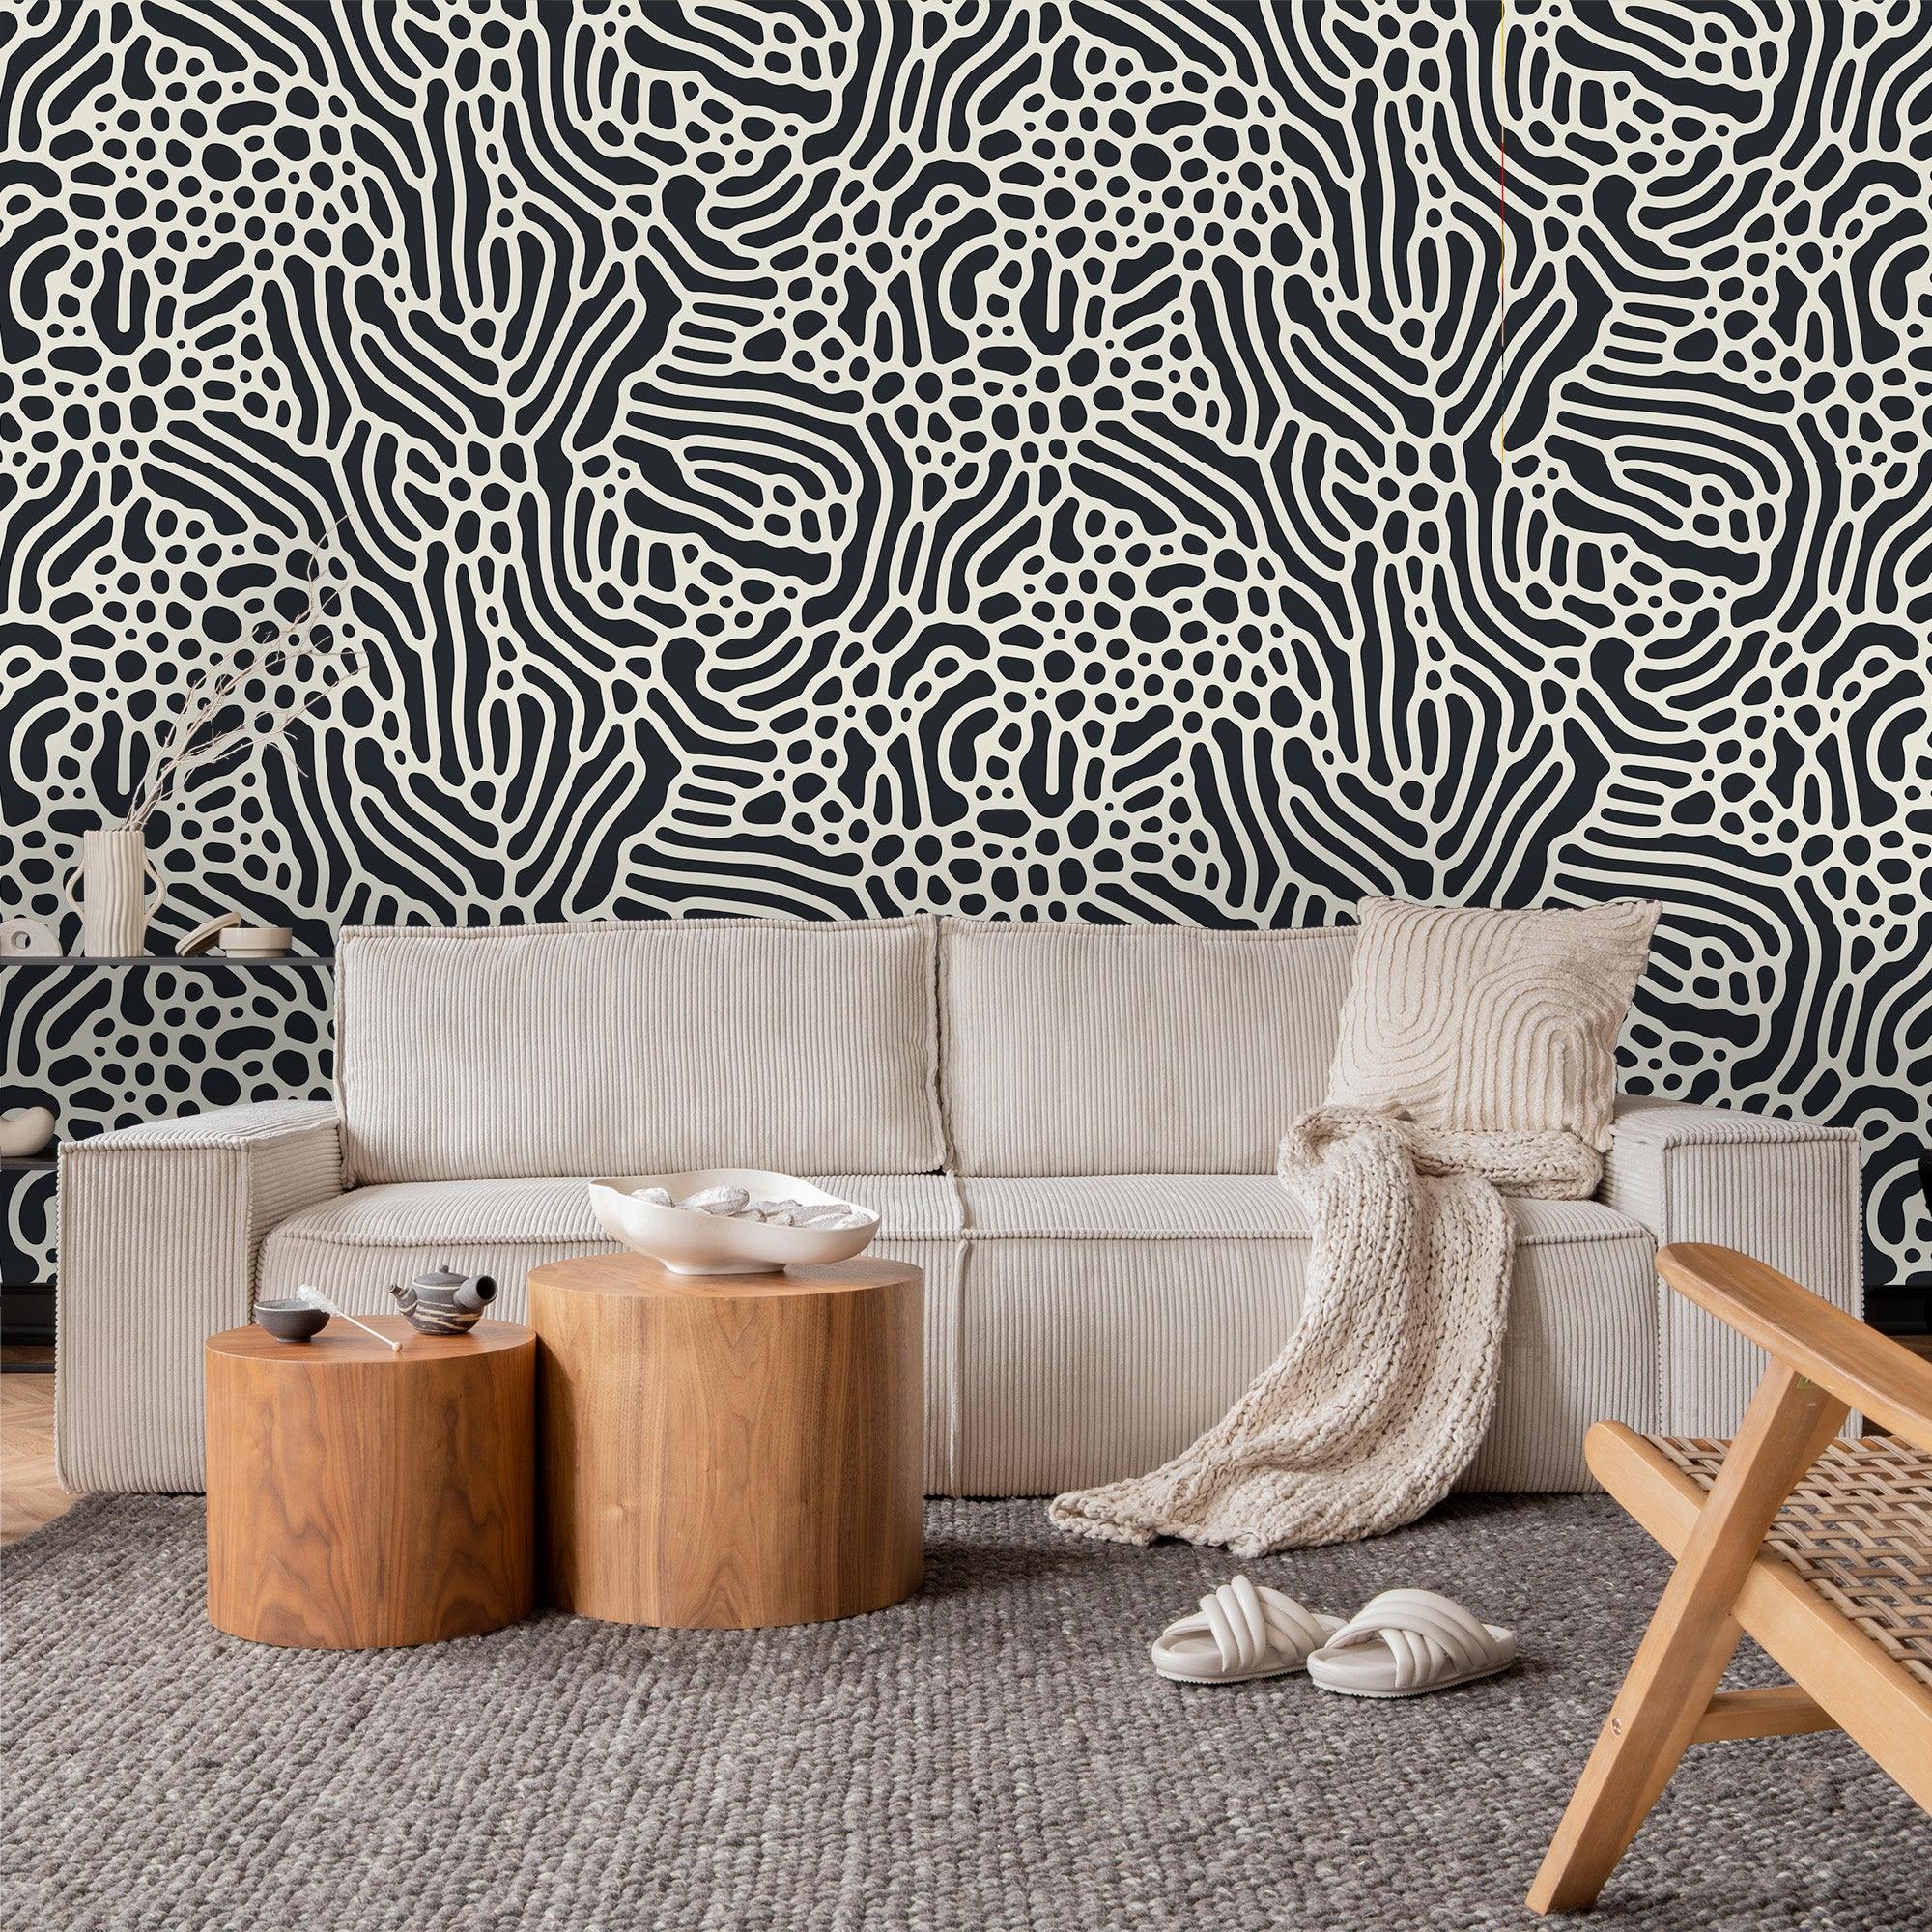 salon avec papier peint motifs organiques noir et blanc Anna